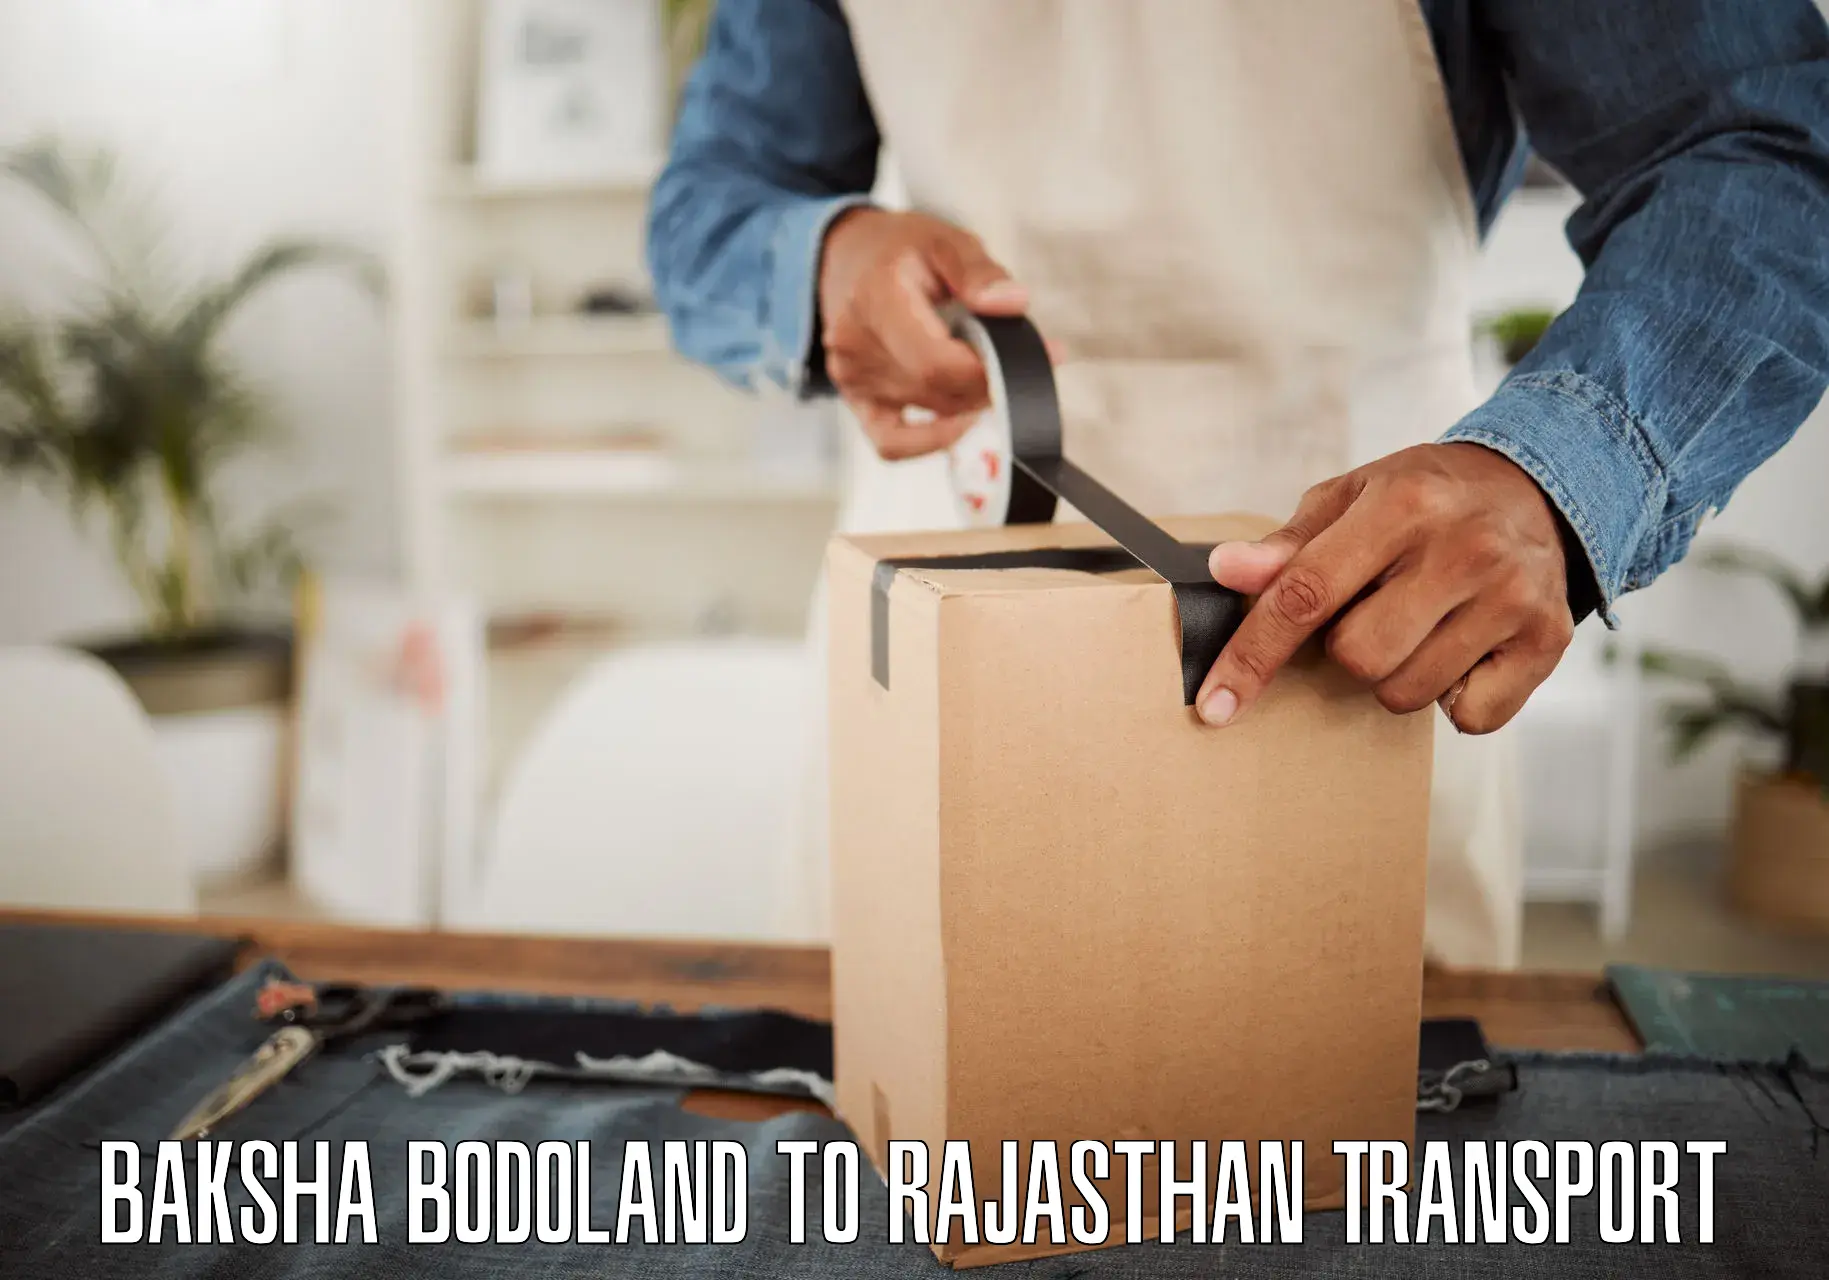 Transport services Baksha Bodoland to Rajasthan